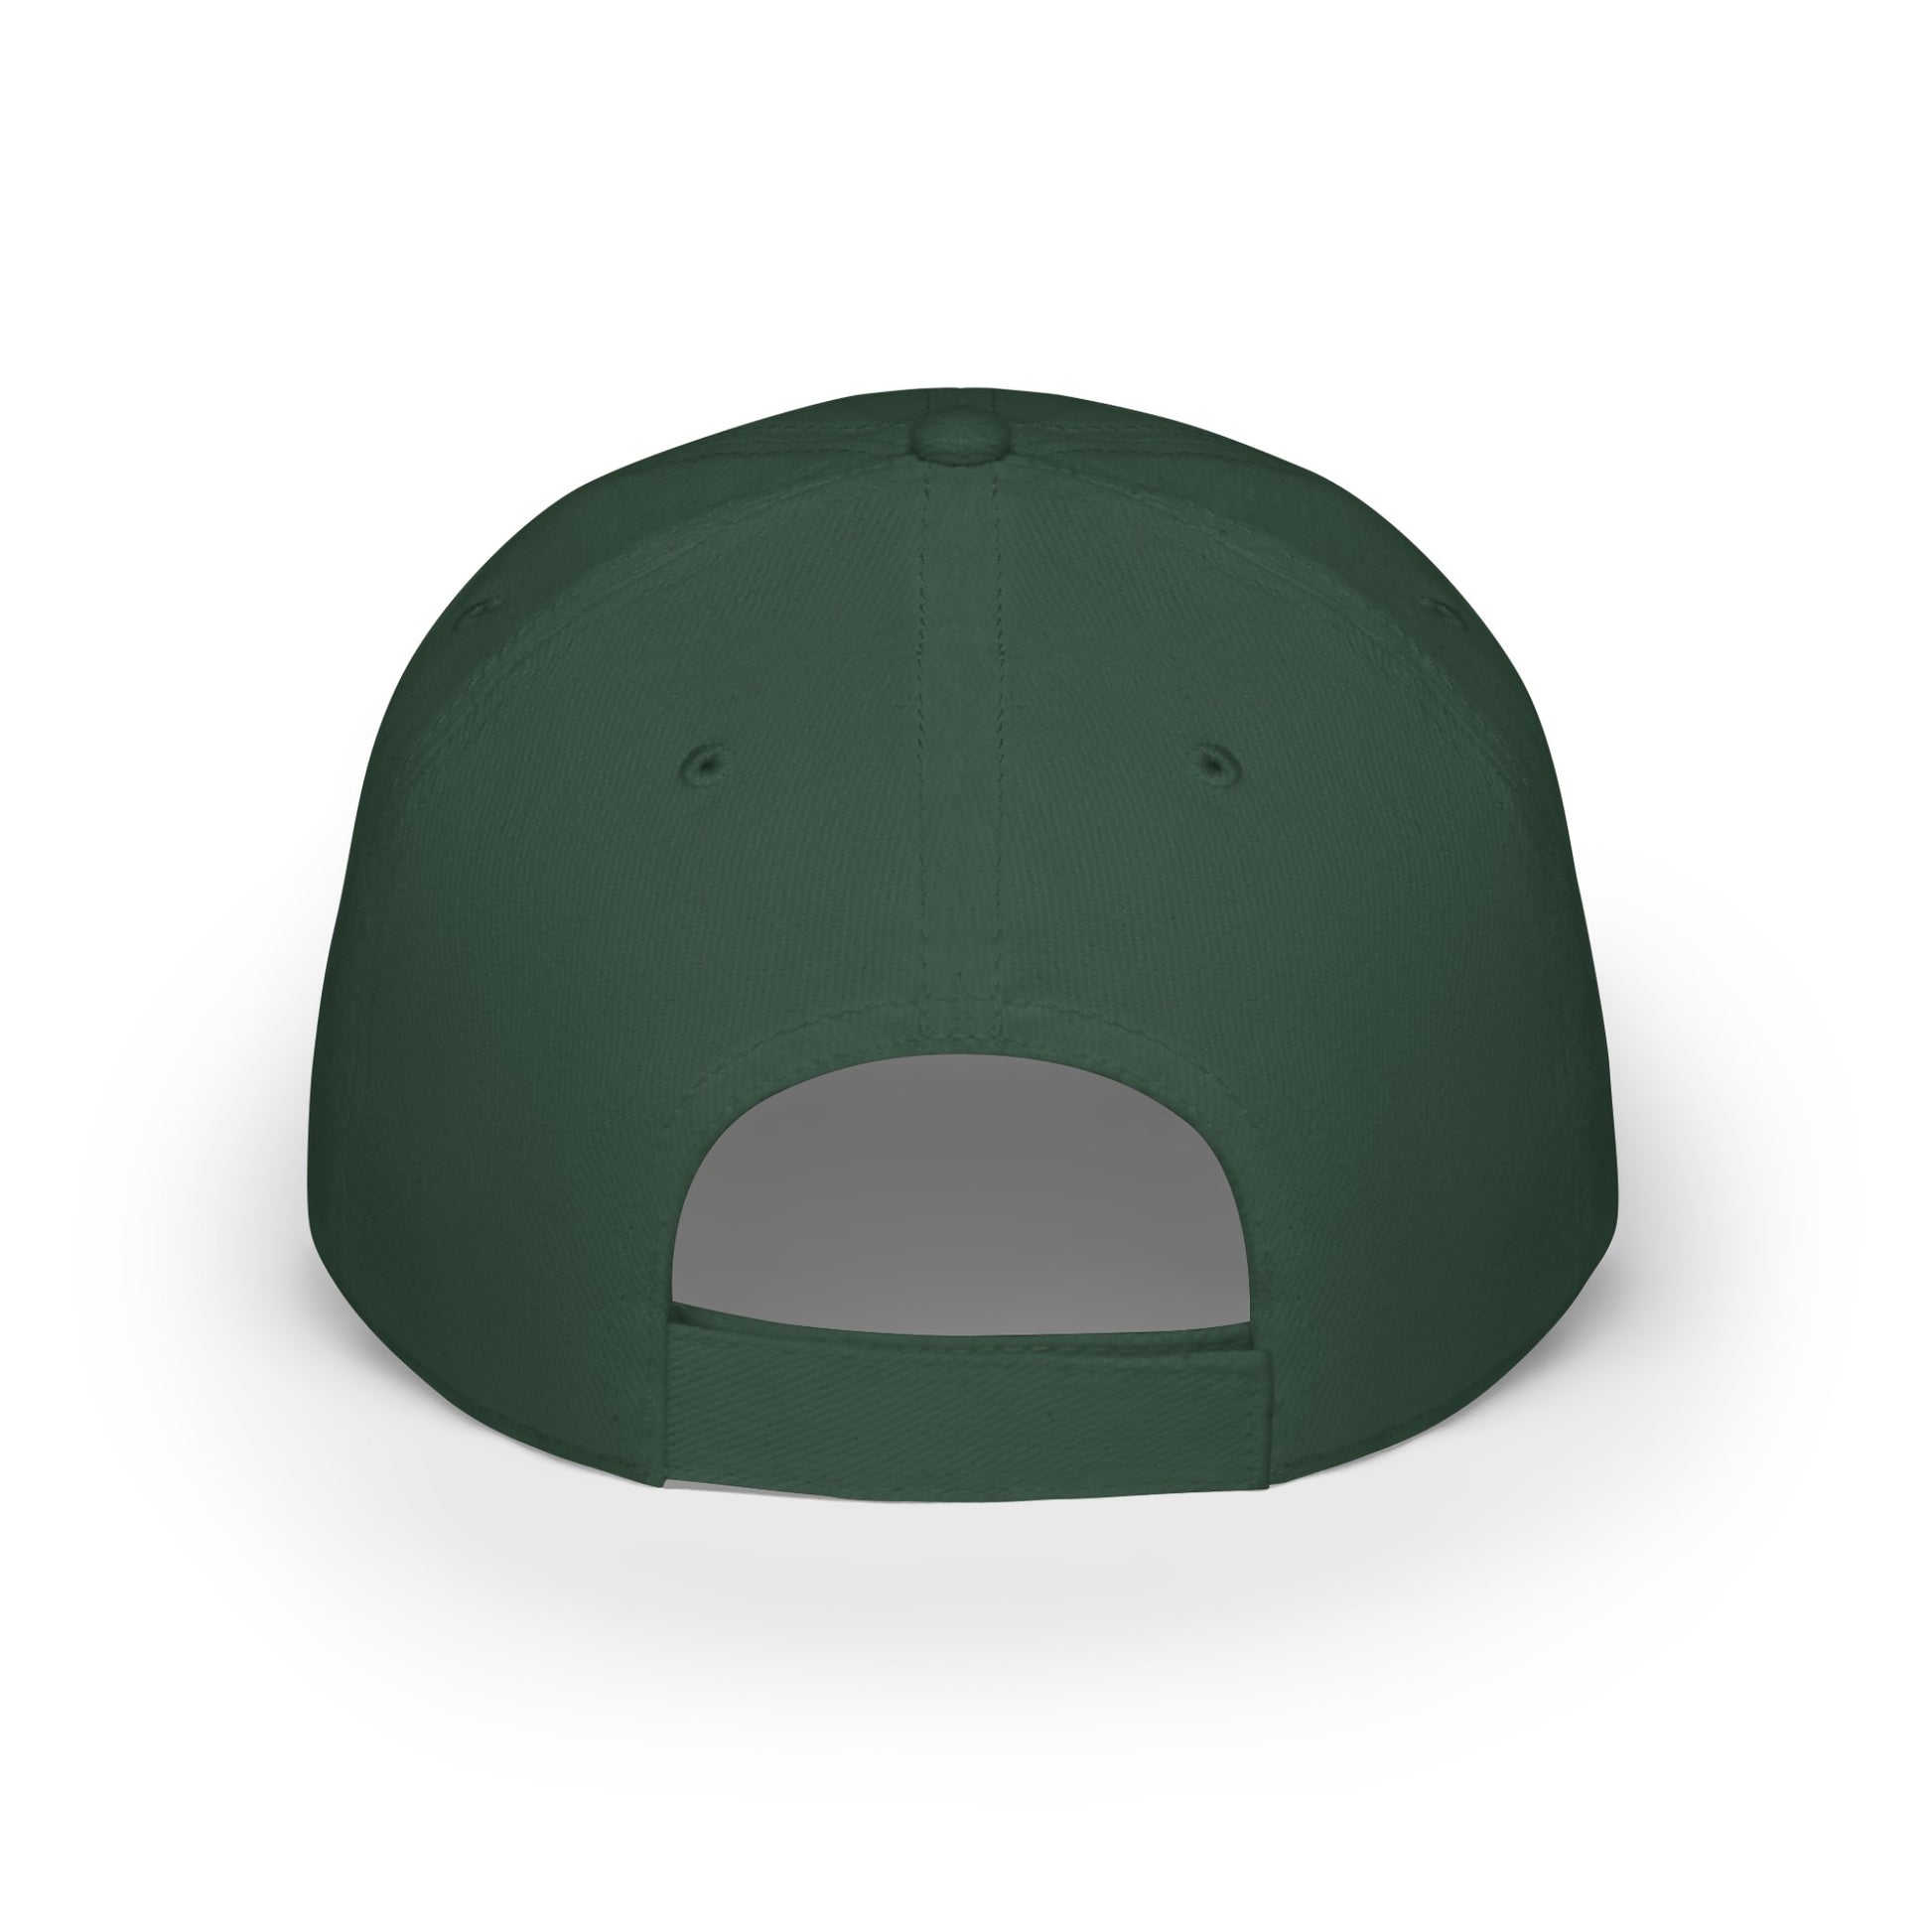 MDBTDJ#WRWGC - Low Profile Baseball Cap Tattooed Dj's Limited Edition, Hats, Tattooed Djs Shop